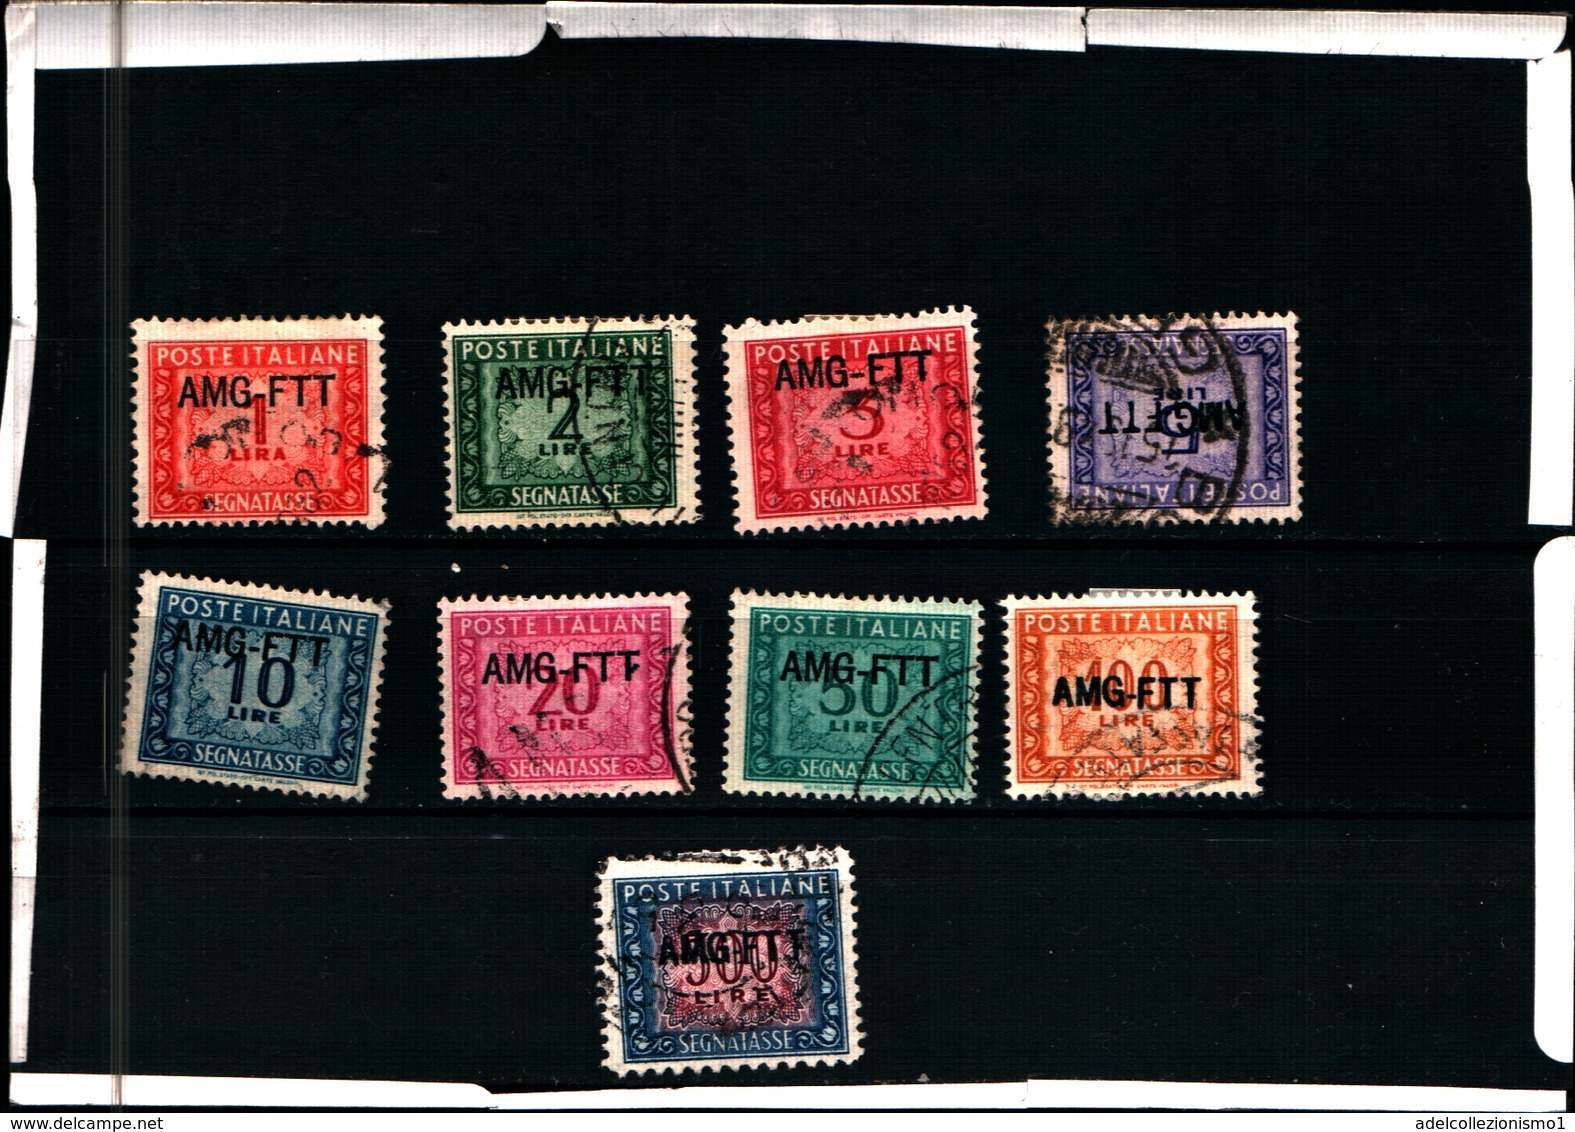 93421) ITALIA.- TRIESTE 1949 - 1953 TRIESTE -1949 SEGNATASSE SOPR. UNA RIGA 9 VALORI USATI - Postage Due